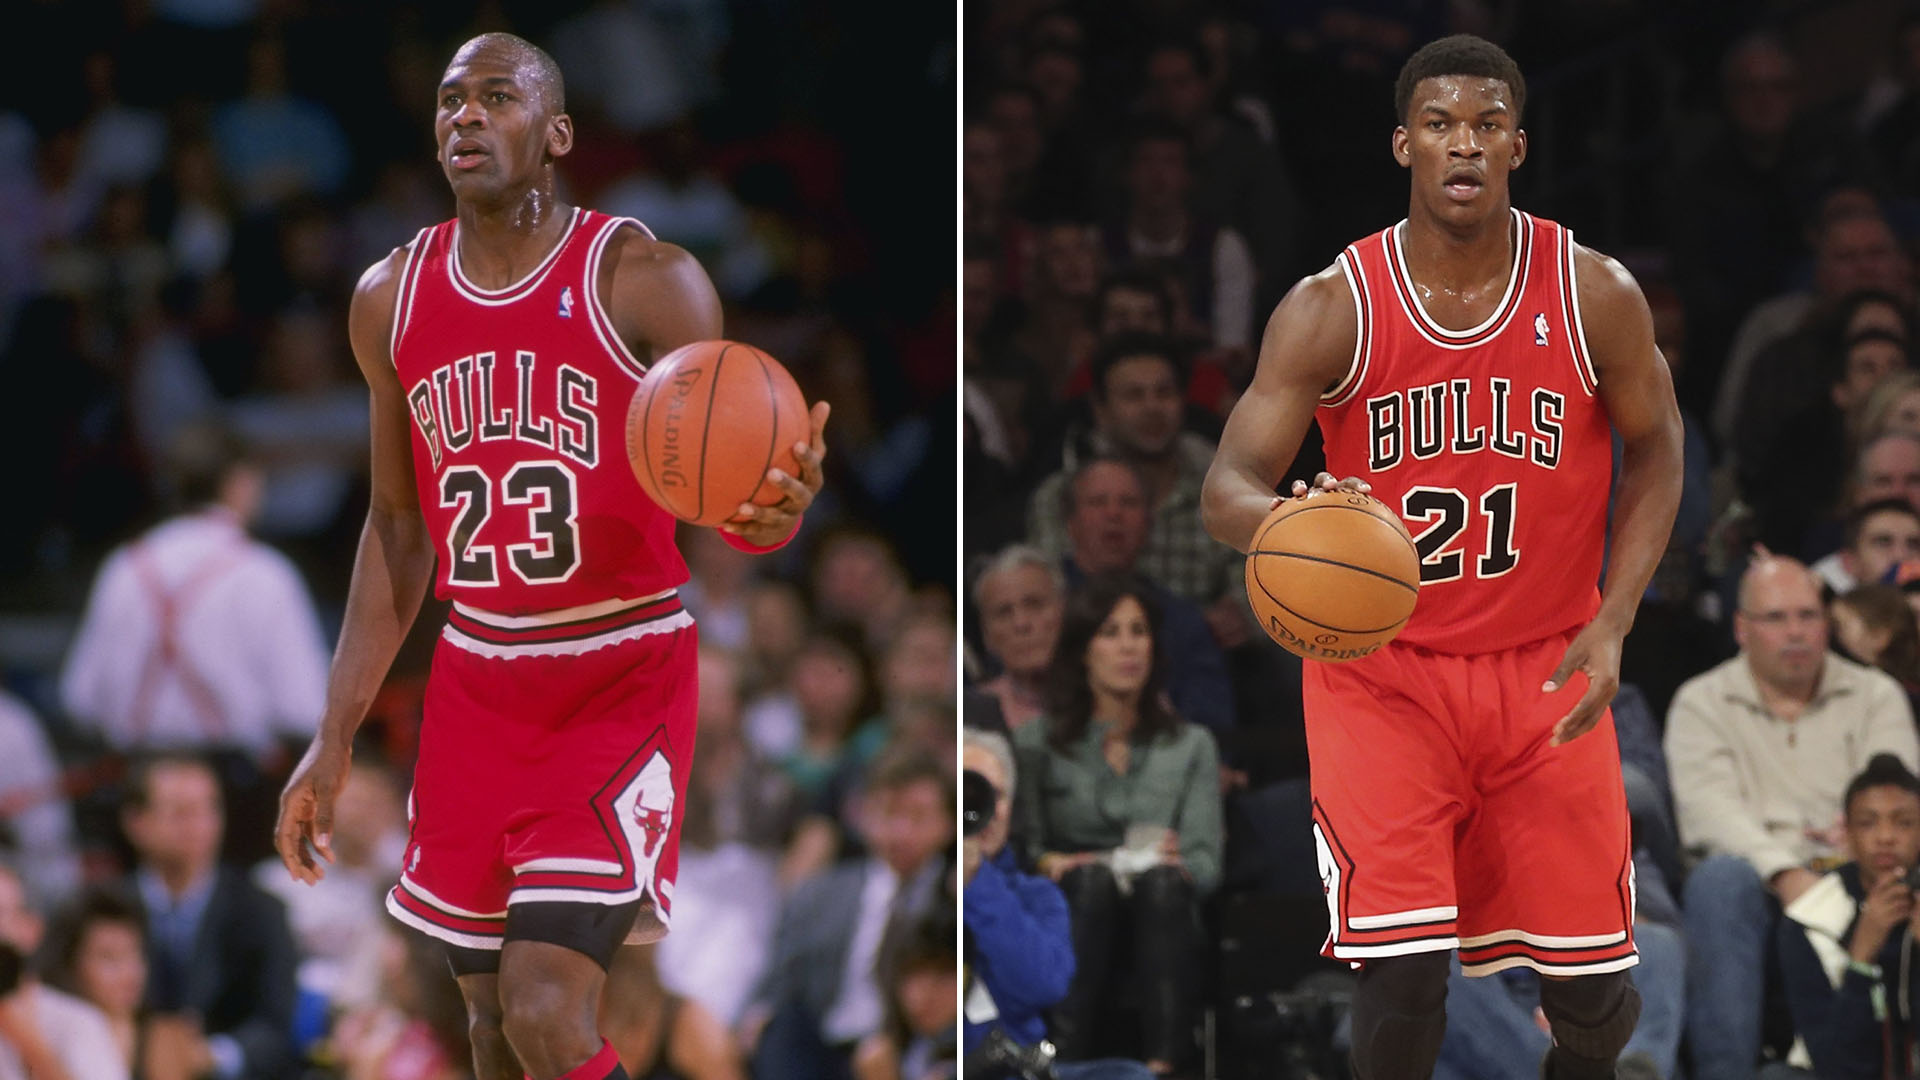 La teoría más loca de la NBA: ¿es Jimmy Butler el hijo no reconocido de Michael Jordan?